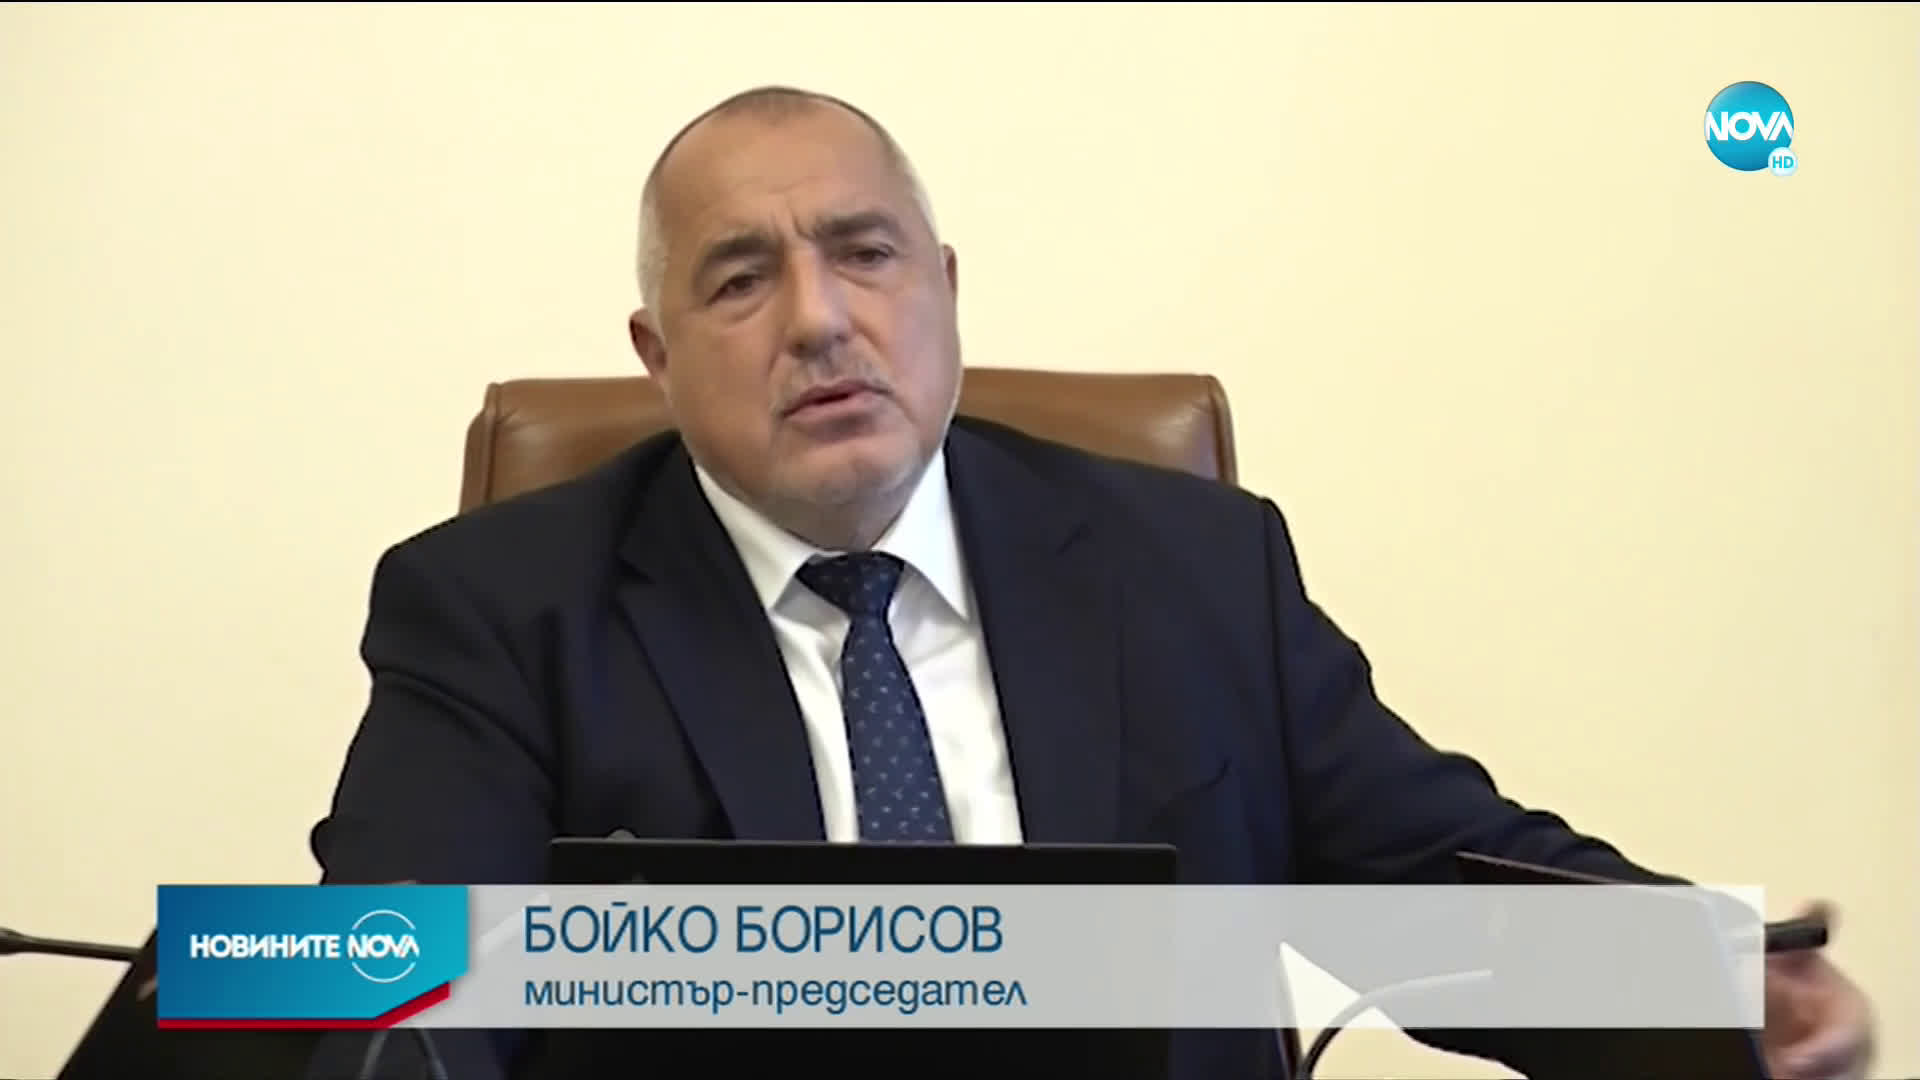 Борисов: Без маски на открито, ако няма струпване на хора